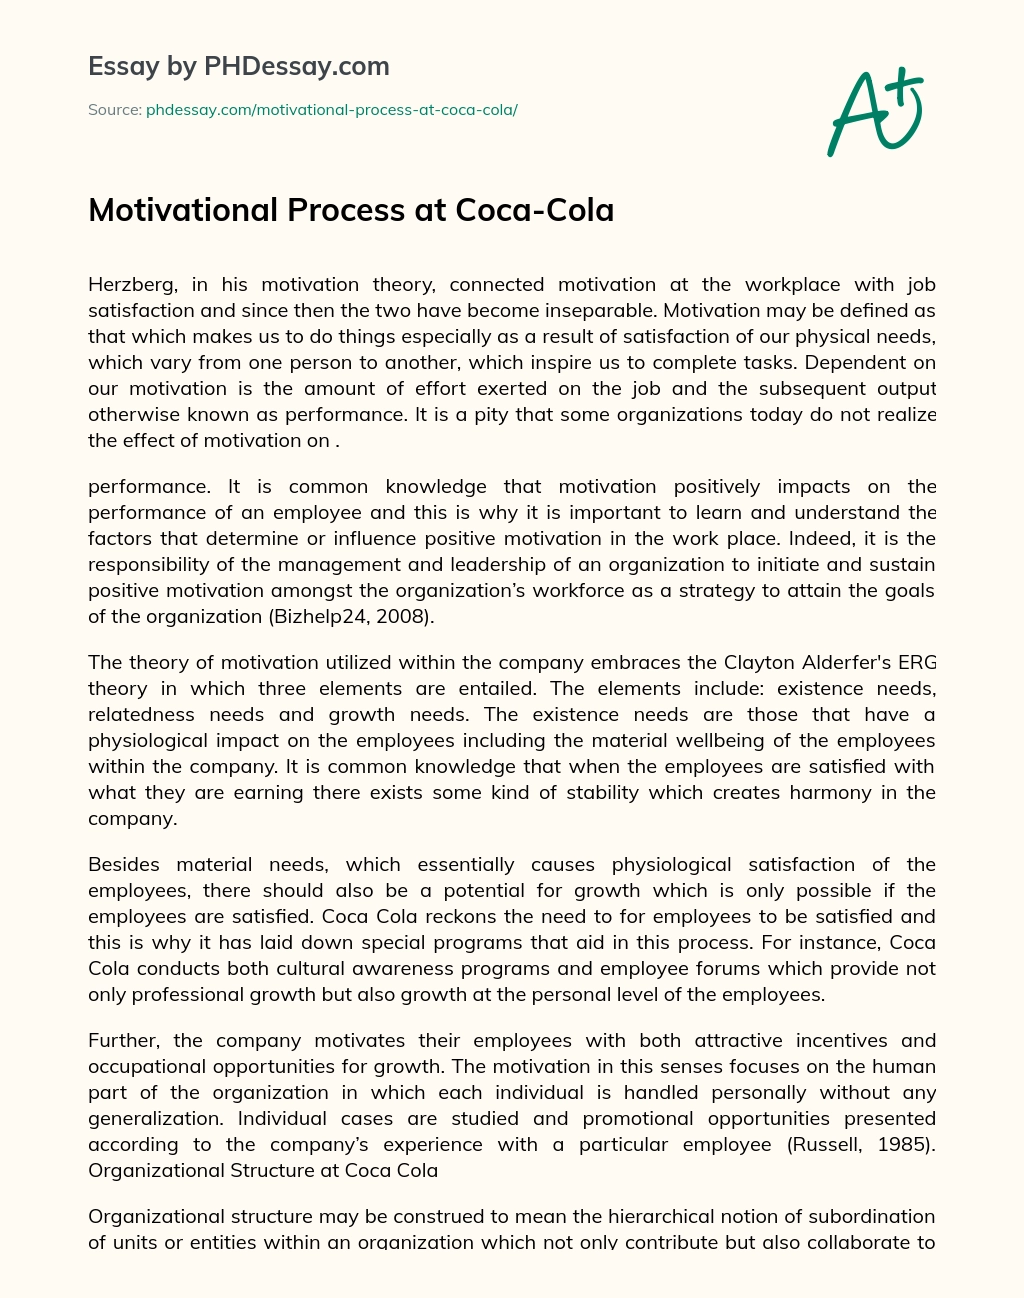 Motivational Process at Coca-Cola essay